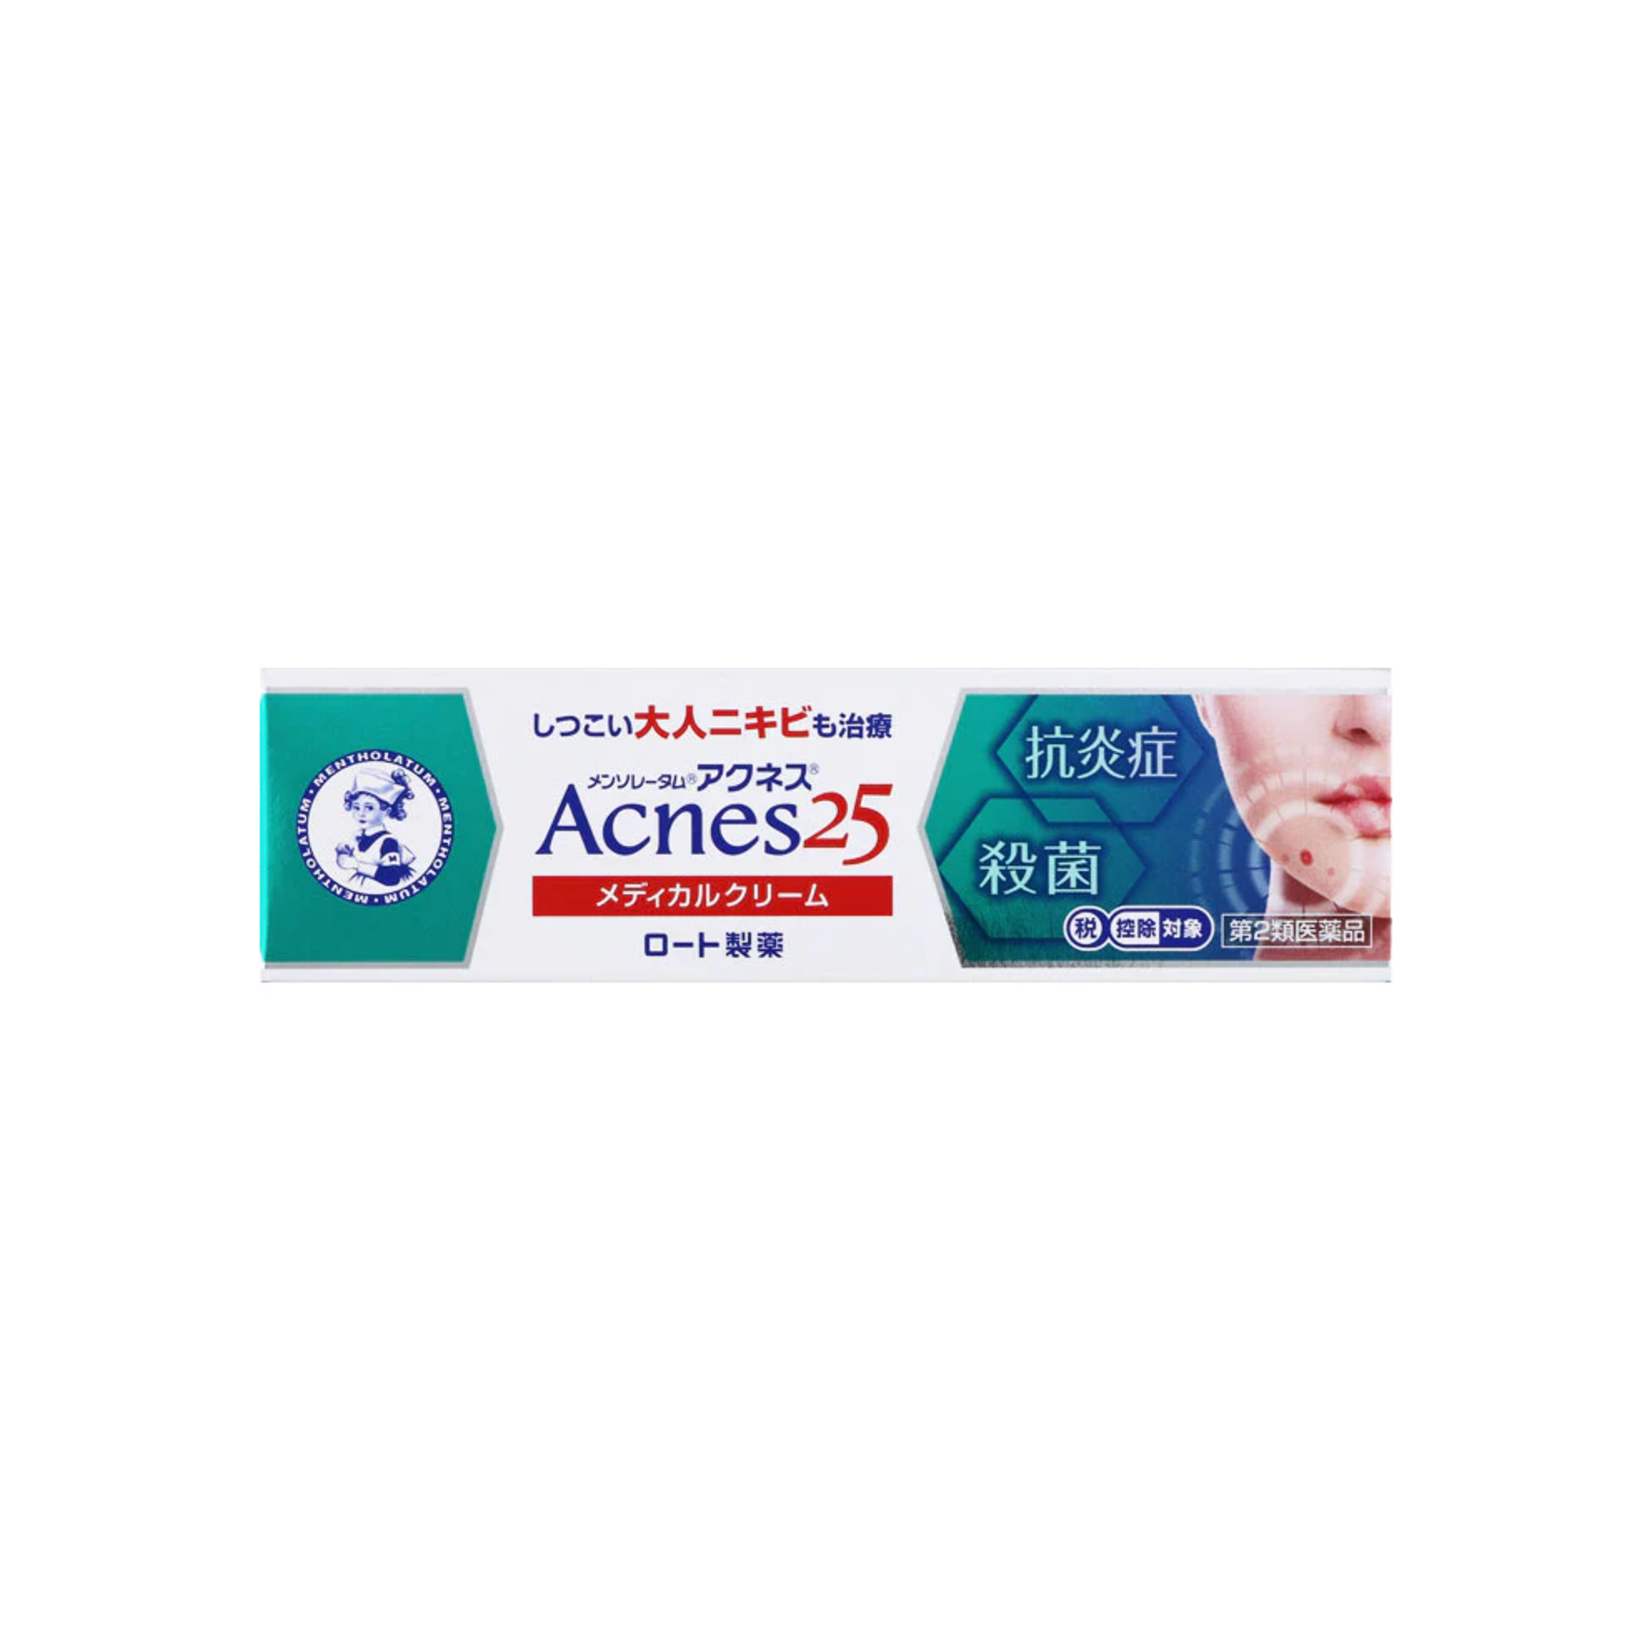 Rohto Mentholatum Rohto Mentholatum Acnes 25 Anti Acne Face Cream 16g